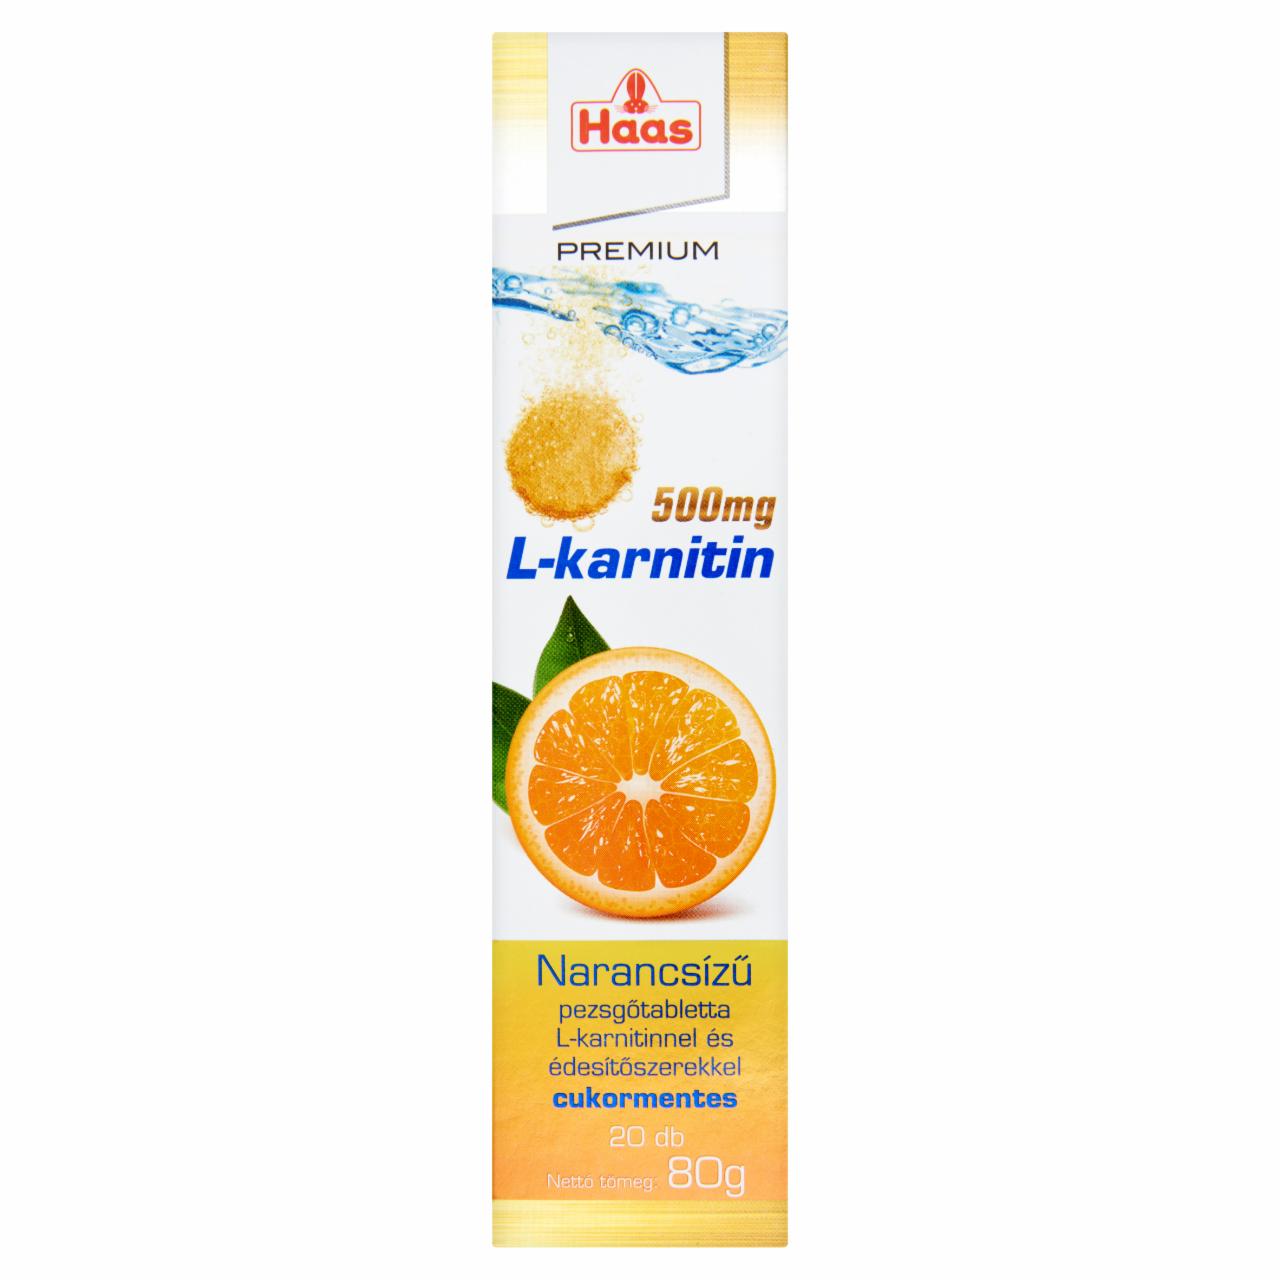 Képek - Haas Premium L-karnitin 500 mg narancsízű cukormentes étrend-kiegészítő pezsgőtabletta 20 db 80 g